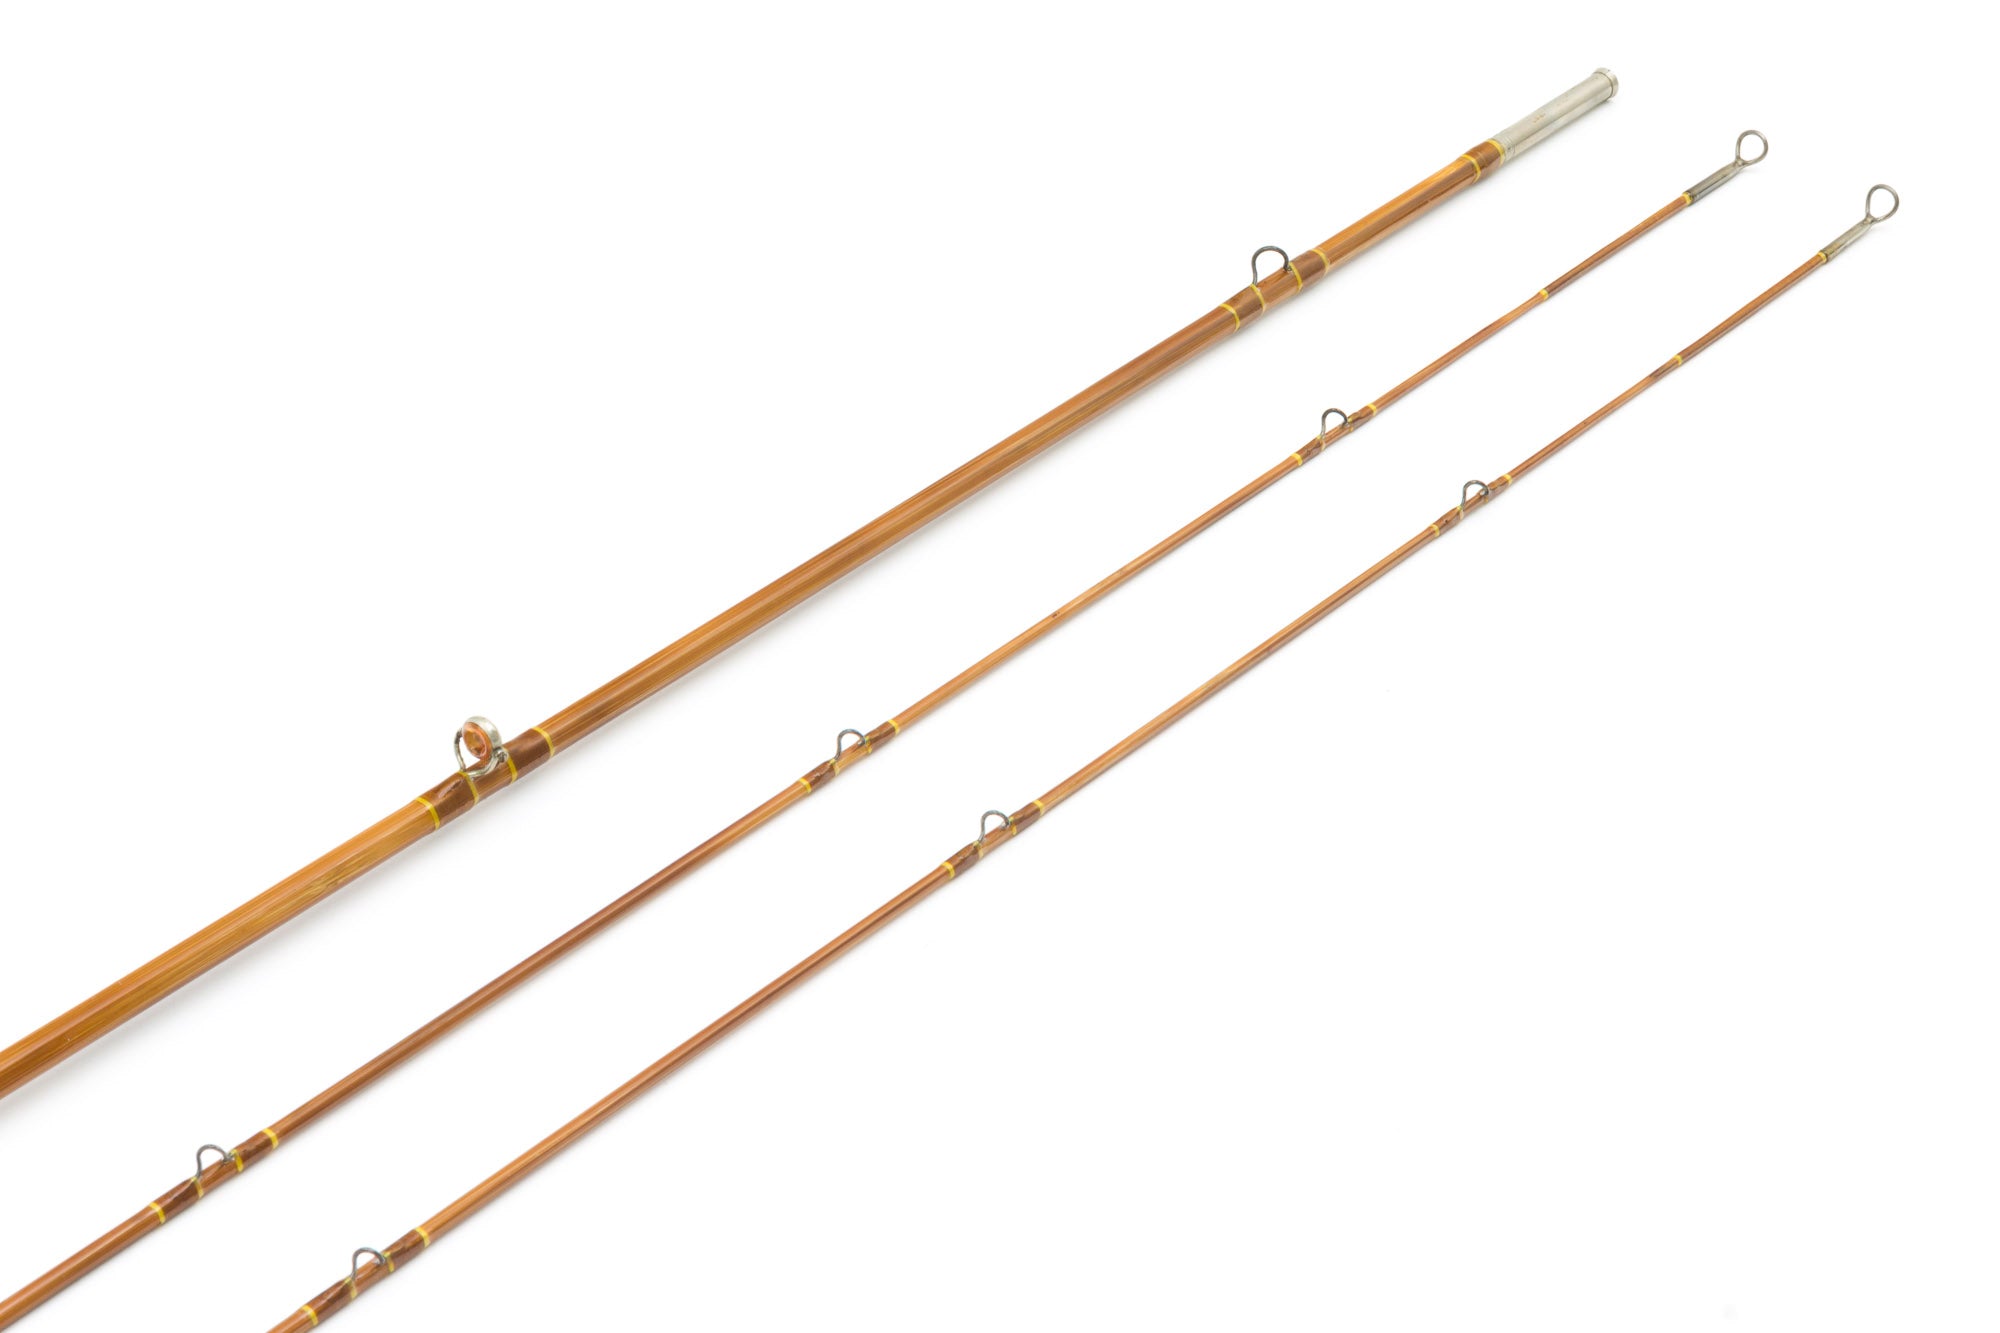 Edwards Bamboo Fly Rods - Spinoza Rod Company